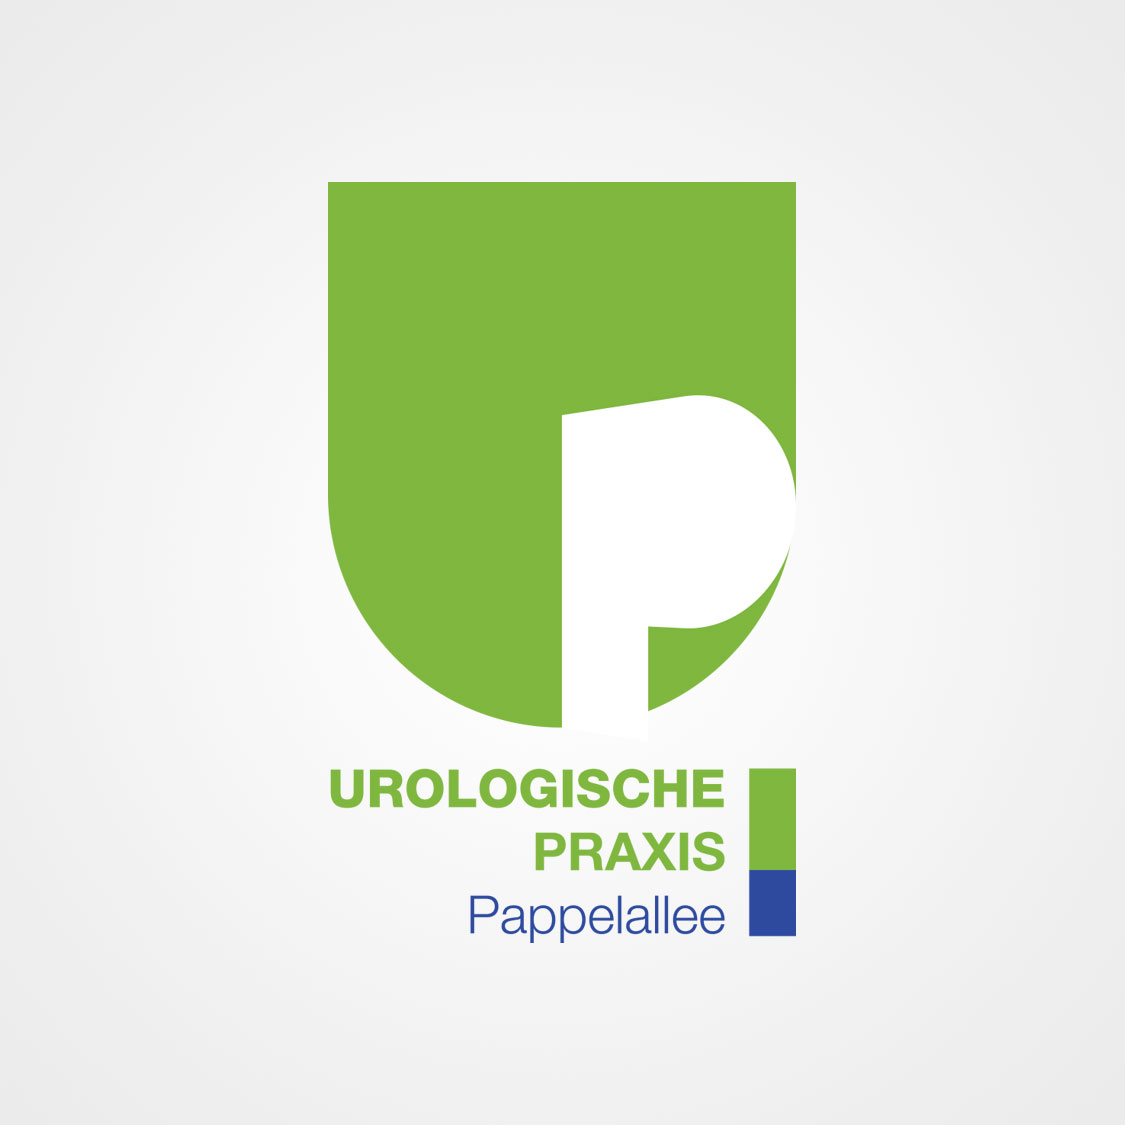 Ansicht des Praxislogos für die Urologische Praxis Pappelallee ind Greifswald.